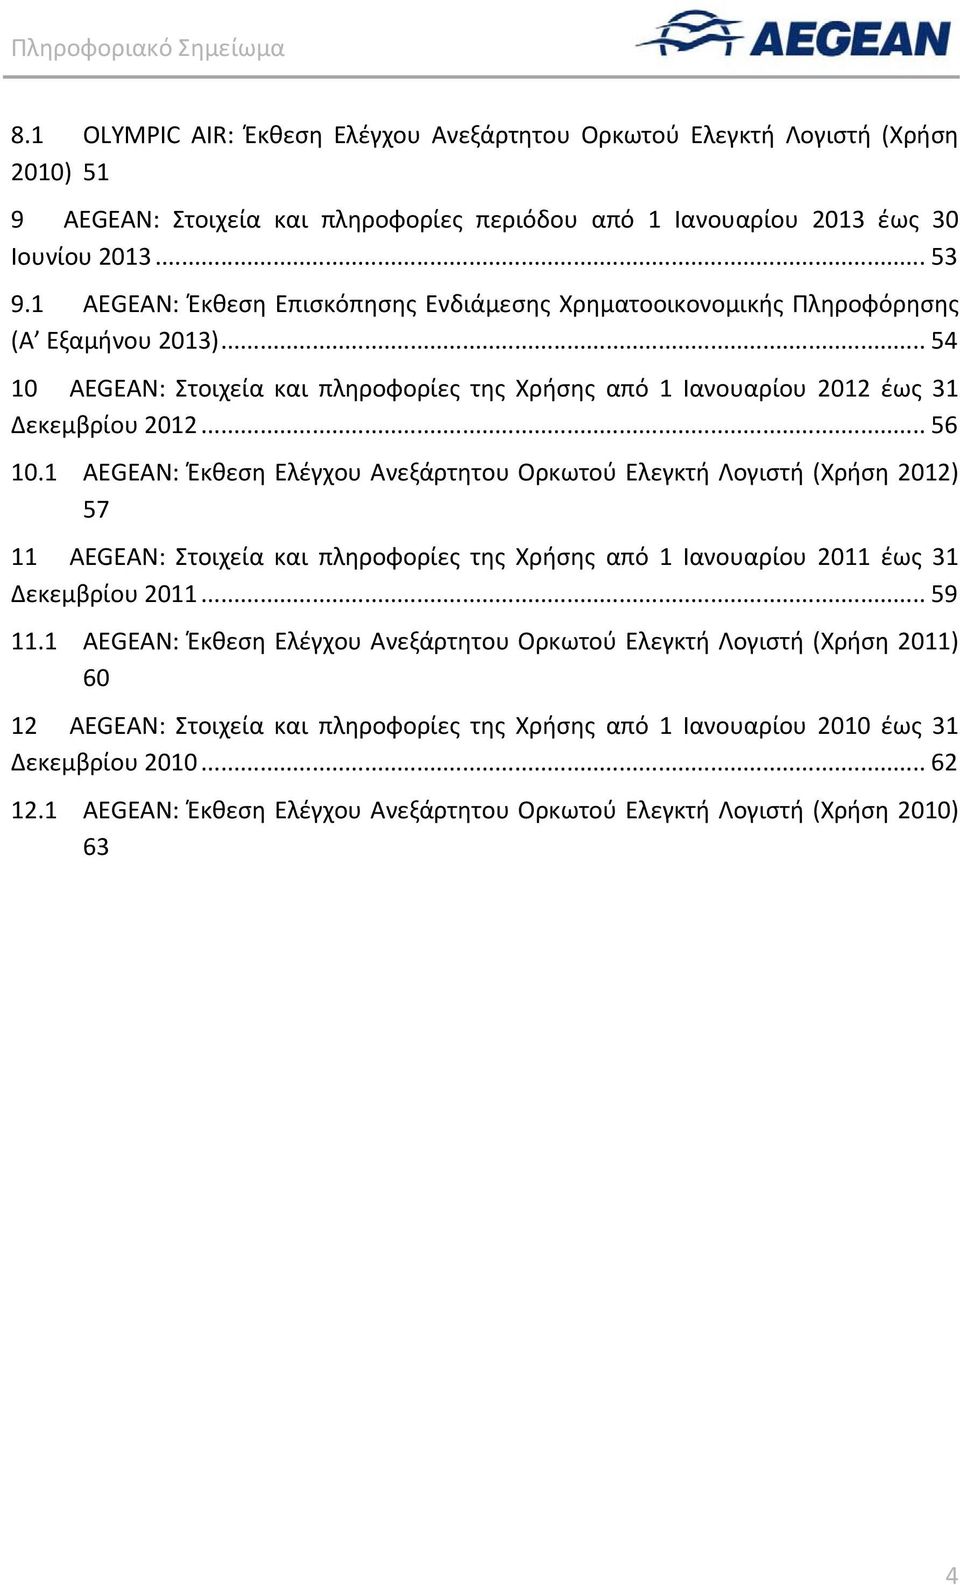 1 AEGEAN: Έκθεση Ελέγχου Ανεξάρτητου Ορκωτού Ελεγκτή Λογιστή (Χρήση 2012) 57 11 AEGEAN: Στοιχεία και πληροφορίες της Χρήσης από 1 Ιανουαρίου 2011 έως 31 Δεκεμβρίου 2011... 59 11.